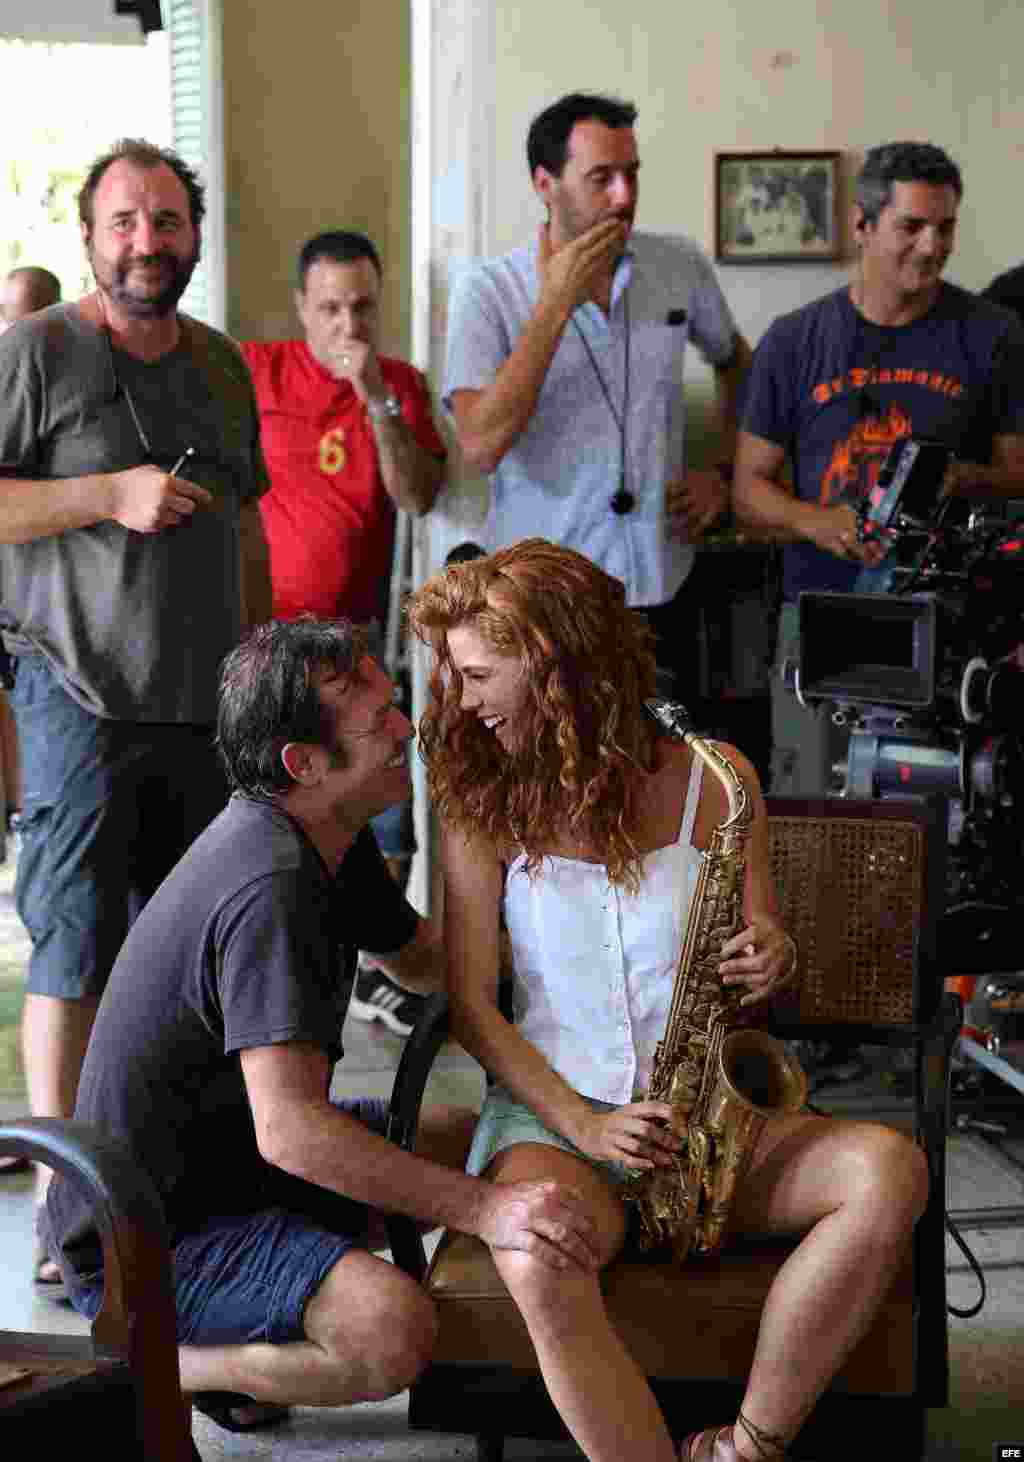  El actor cubano Jorge Perugorría (i) y la actriz colombiana Juana Acosta (d) conversan durante el rodaje de una escena.